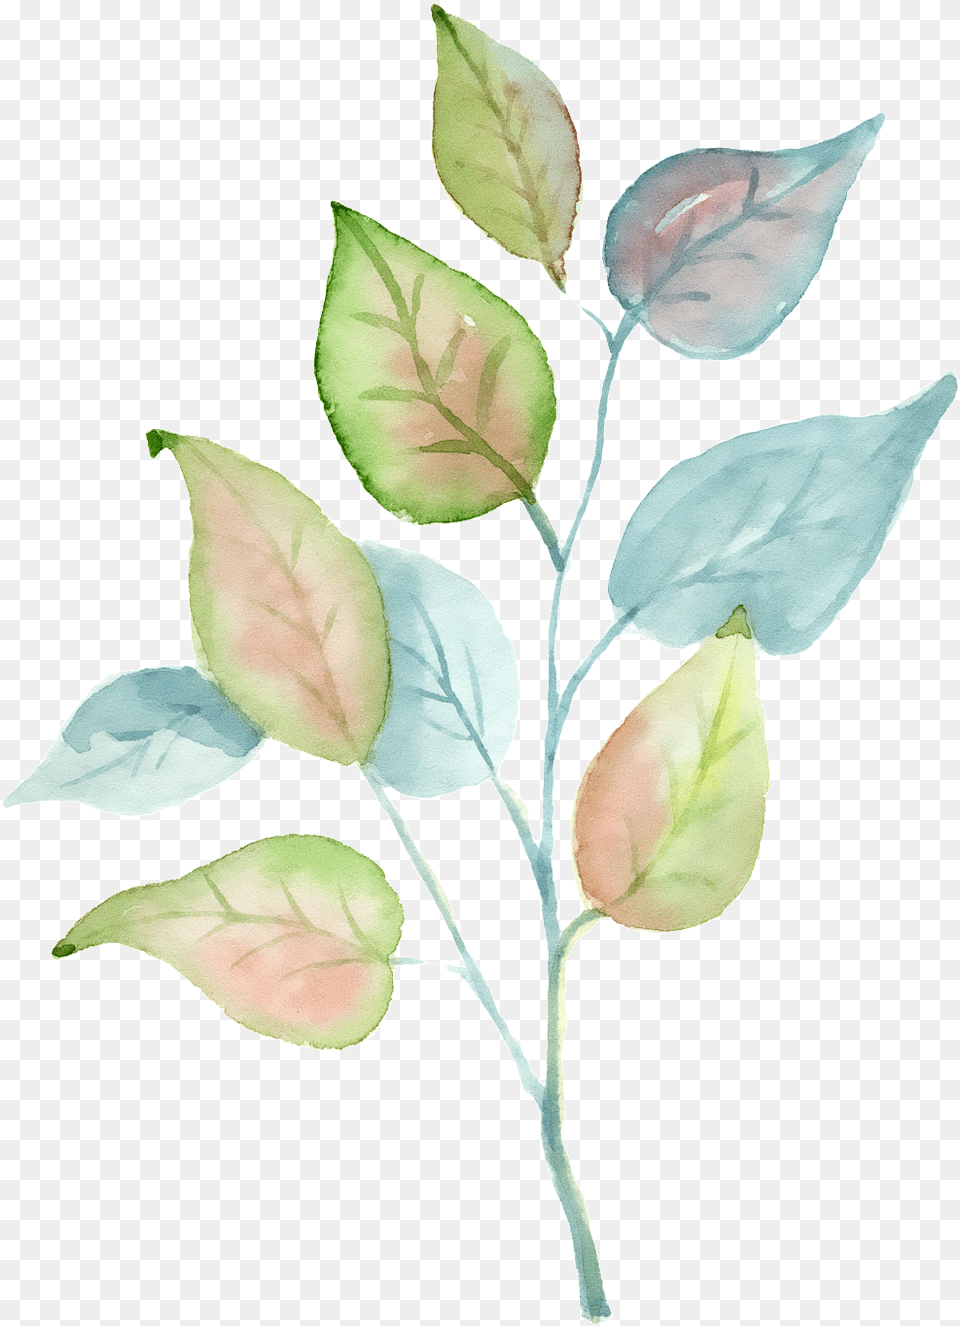 Hand Painted A Tricolor Leaf Plant, Flower, Petal, Annonaceae Free Transparent Png